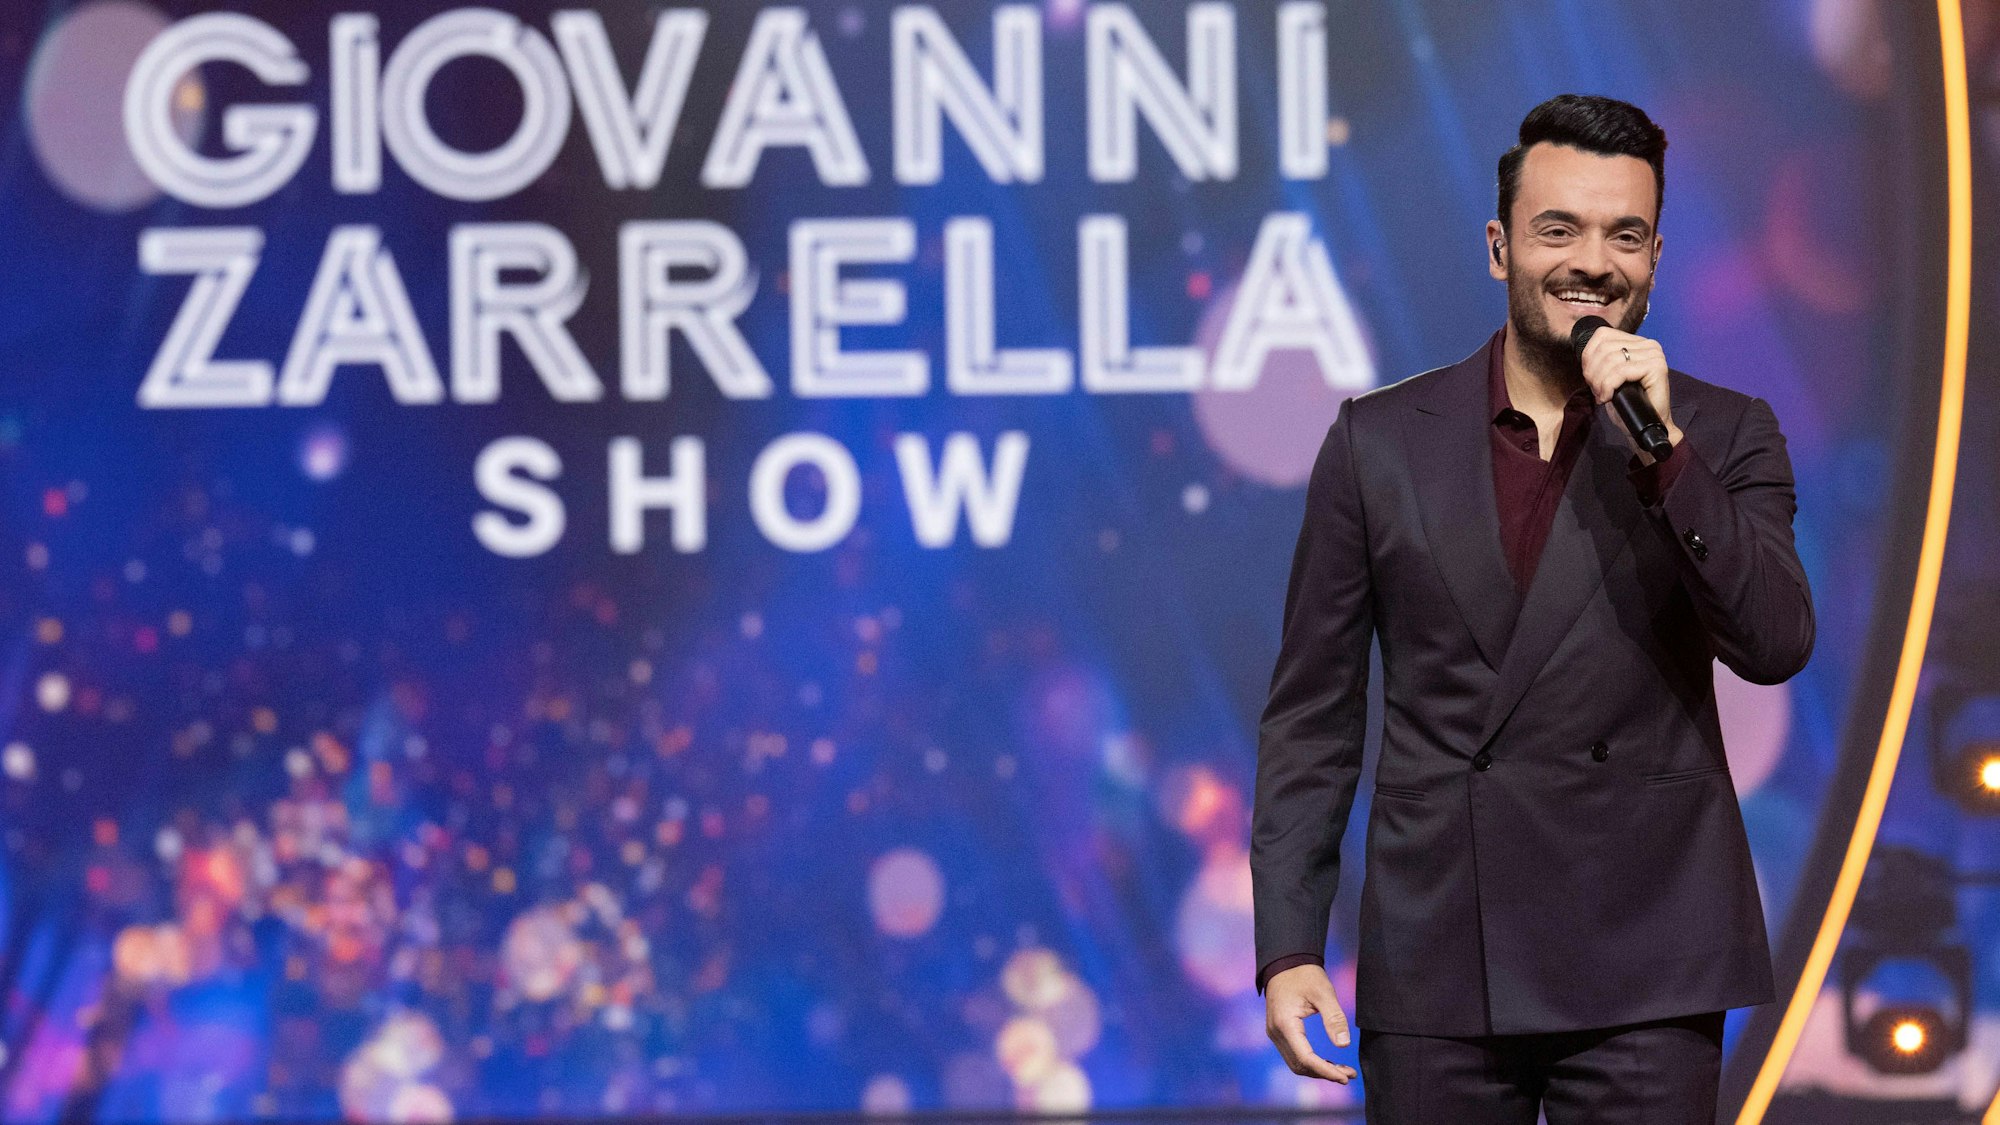 „Die Giovanni Zarrella Show“ präsentierte Giovanni Zarrella am vergangenen Samstag (12. Februar) live aus Halle an der Saale.